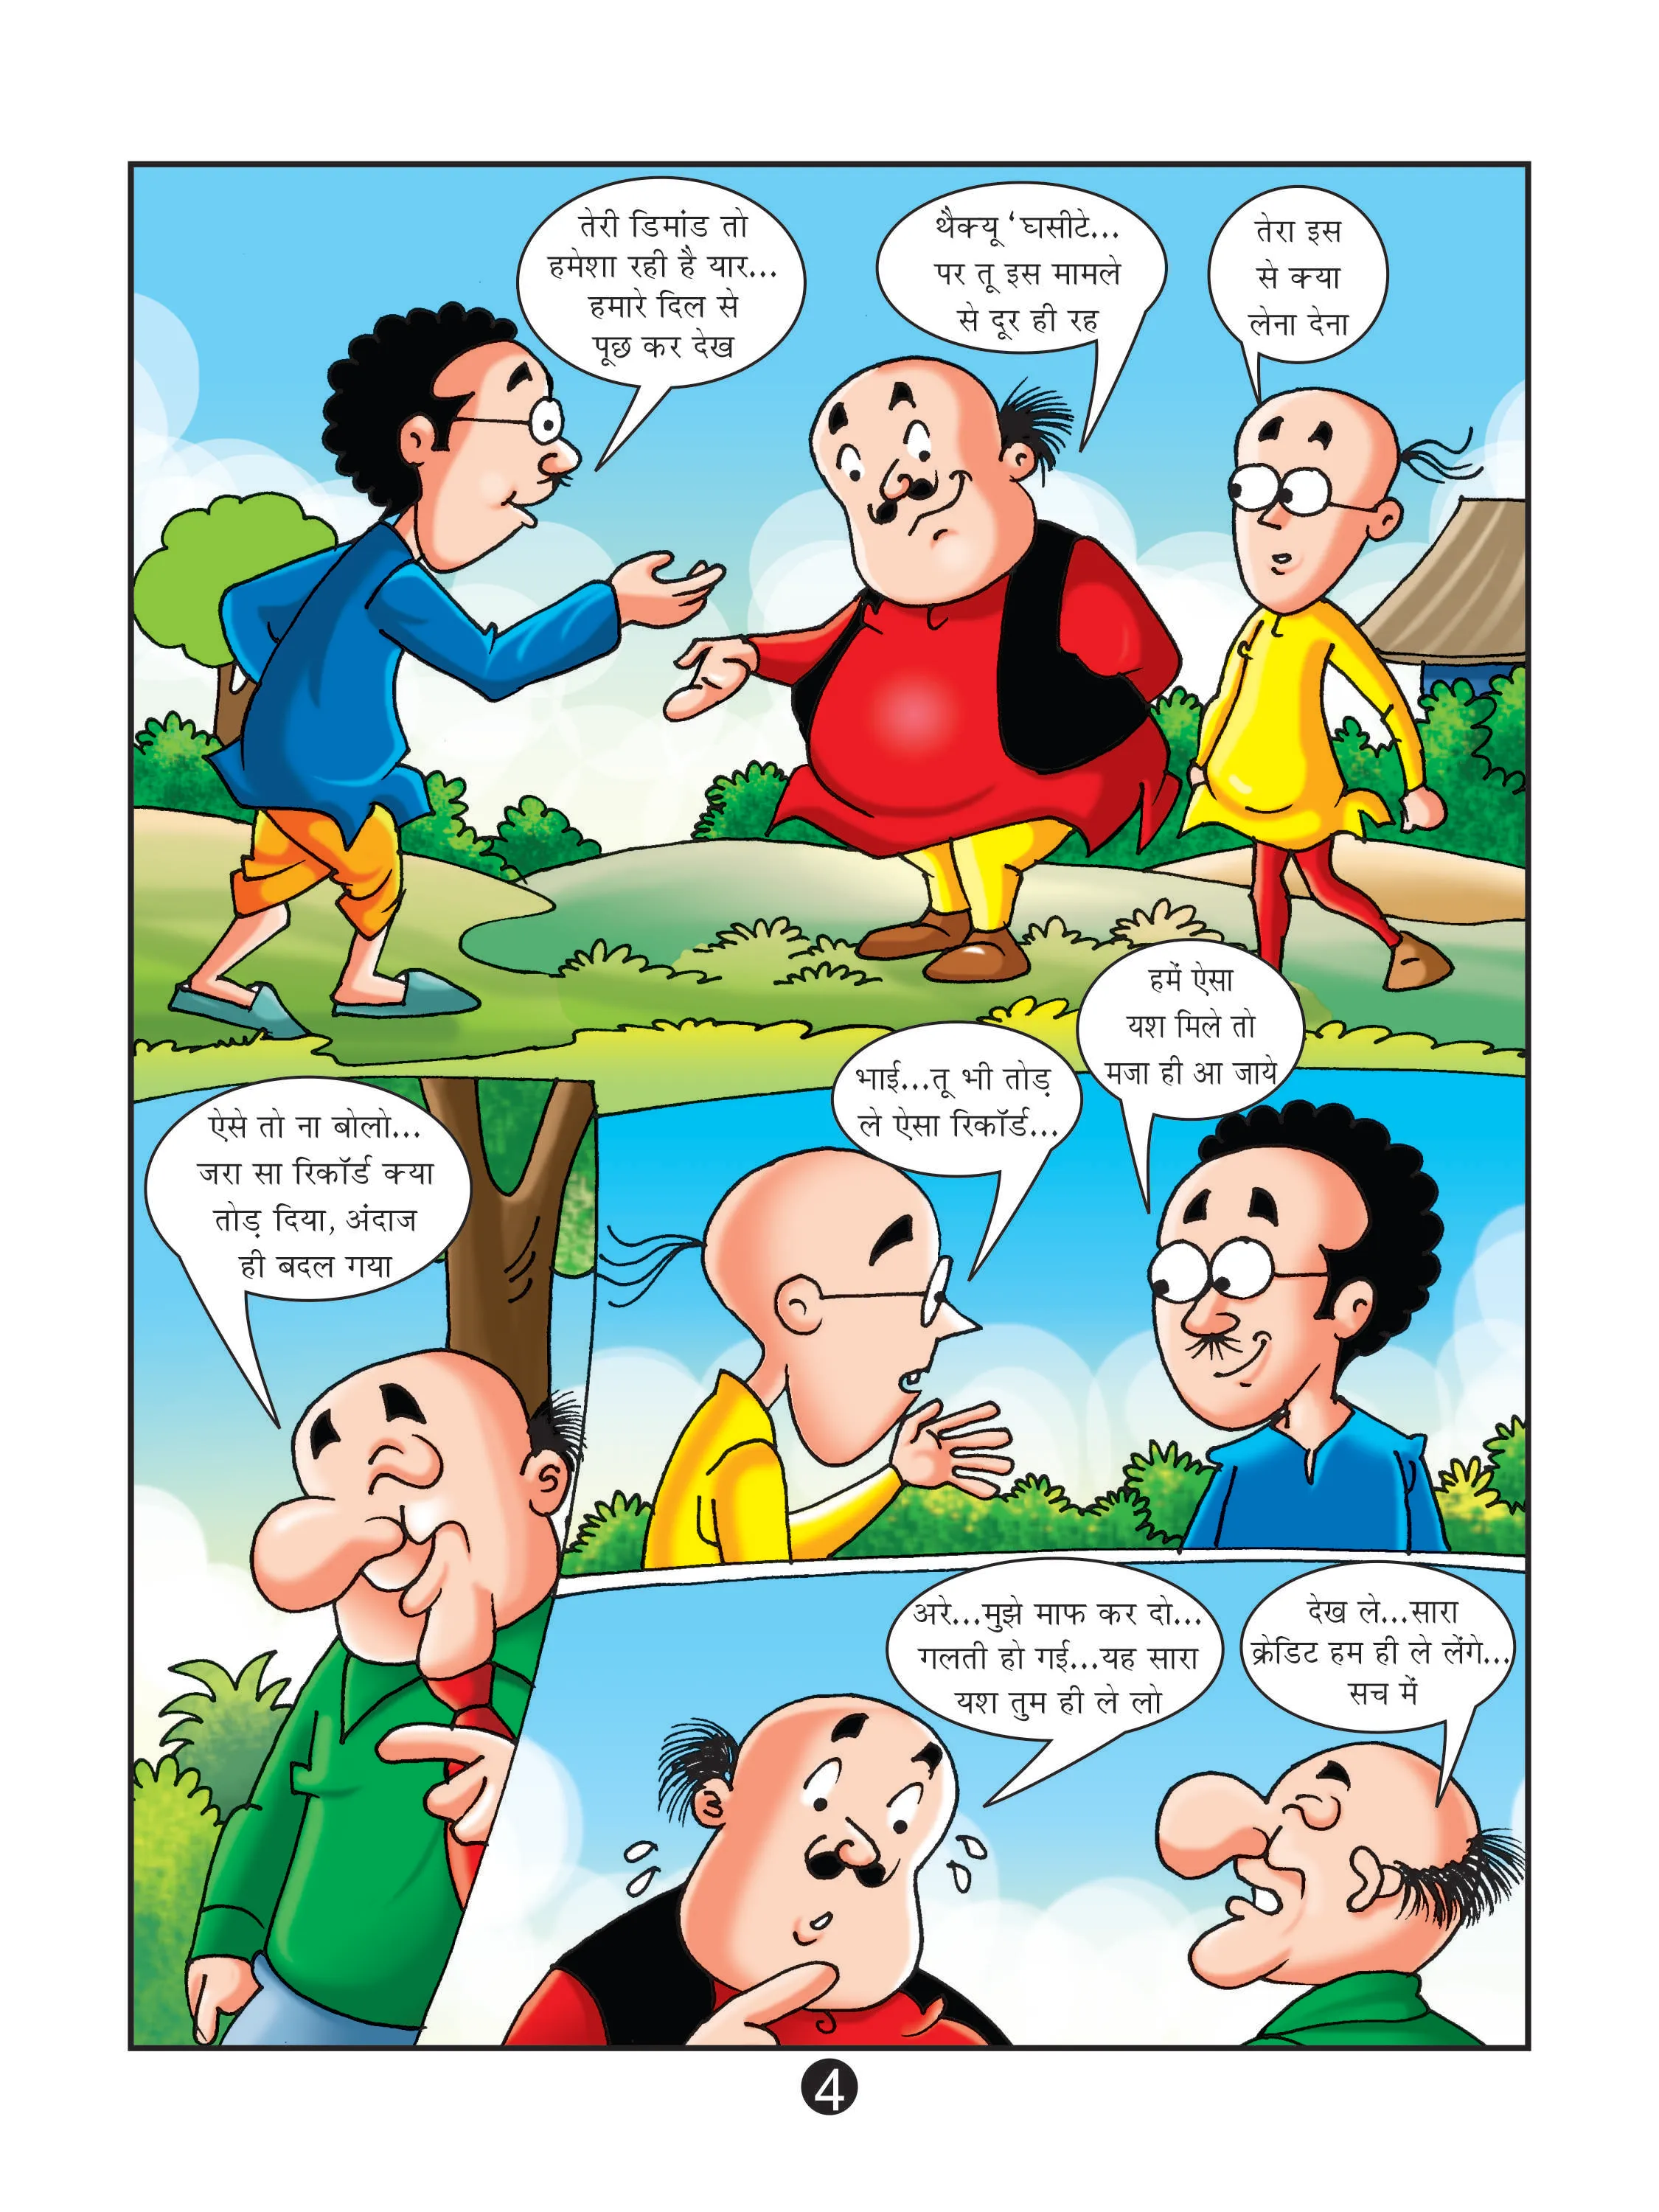 Lotpot E-Comics Cartoon character Motu Patlu